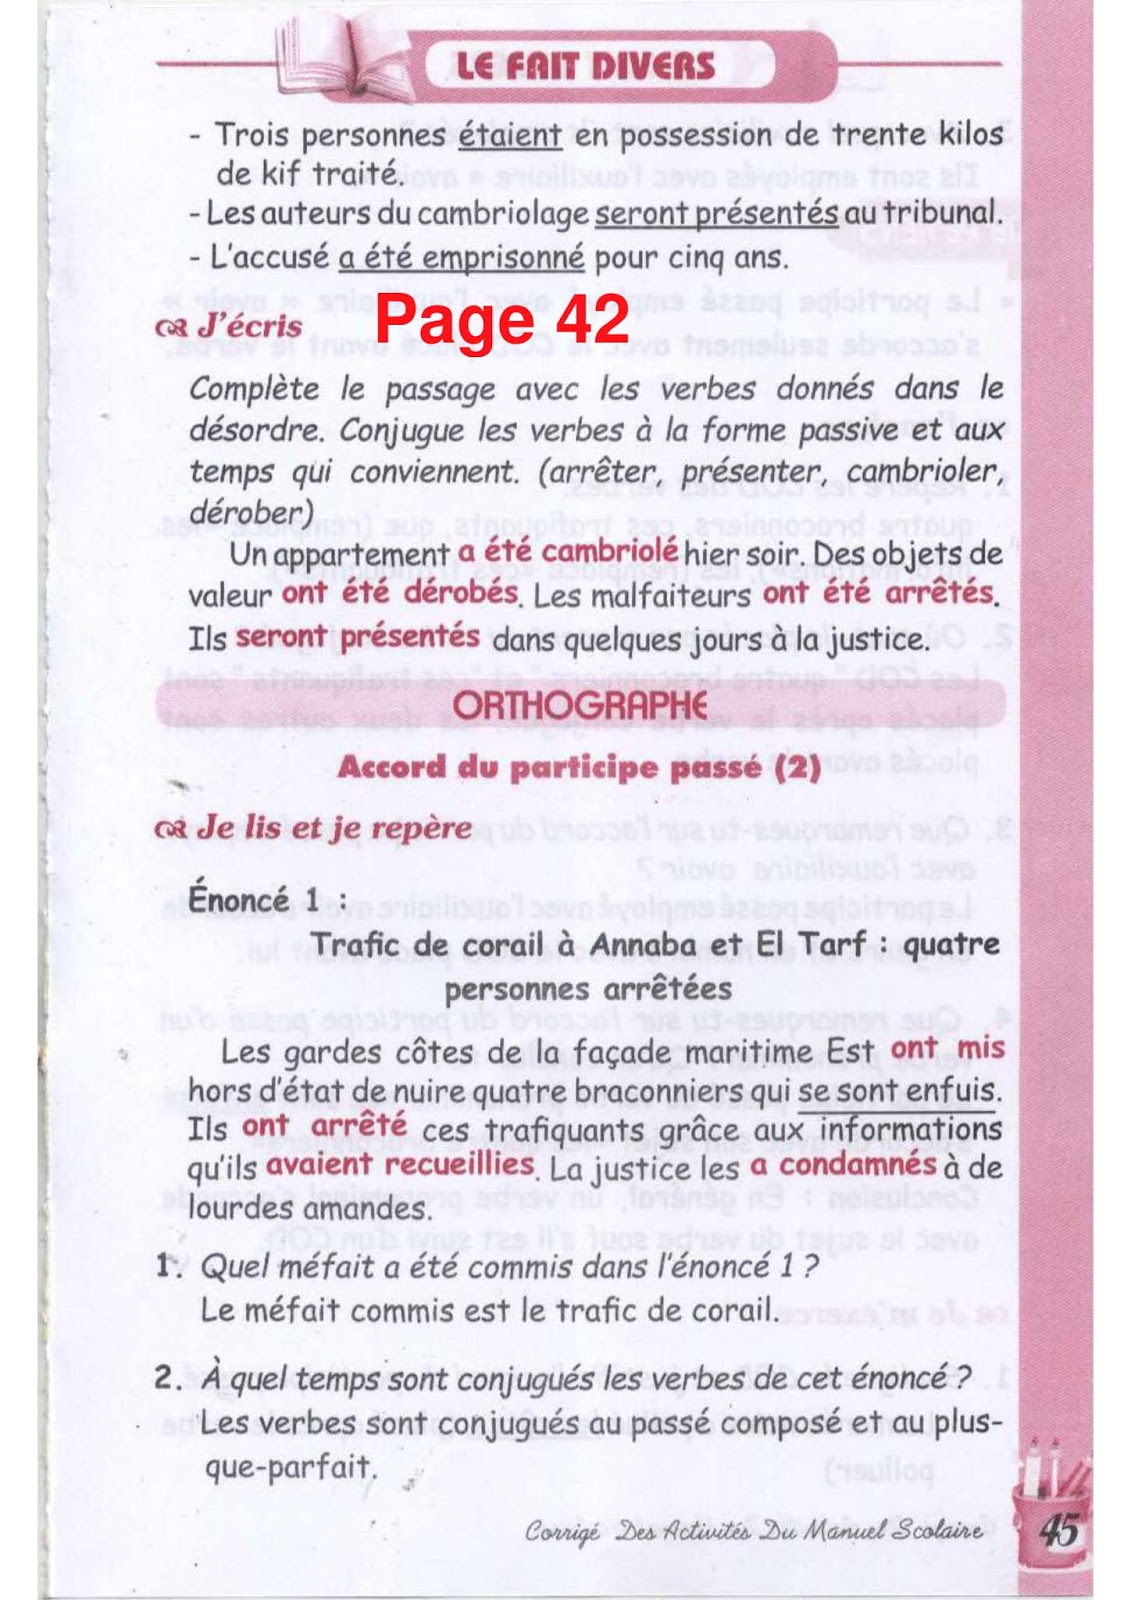 حل تمارين صفحة 43 الفرنسية للسنة الثالثة متوسط - الجيل الثاني